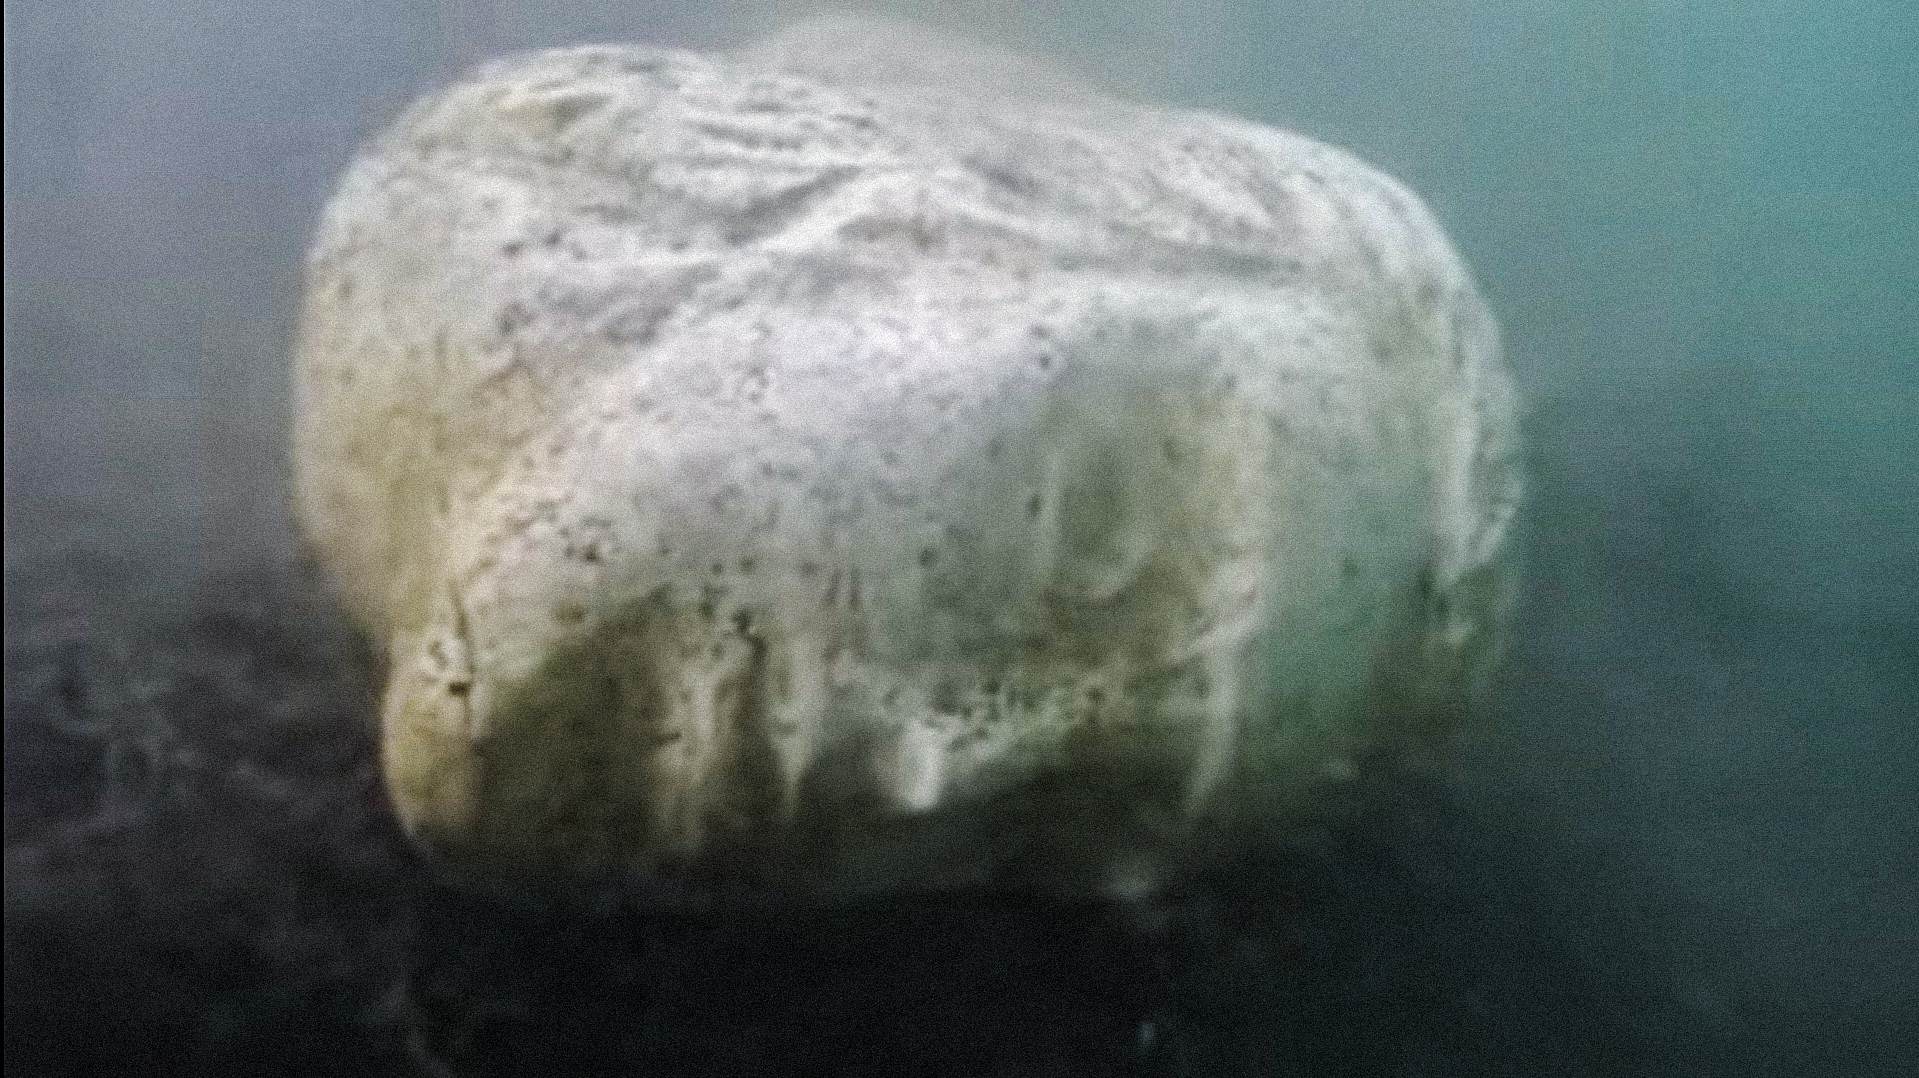 Une tête de marbre romaine trouvée dans le lac de Nemi pourrait provenir des navires légendaires de Caligula 1